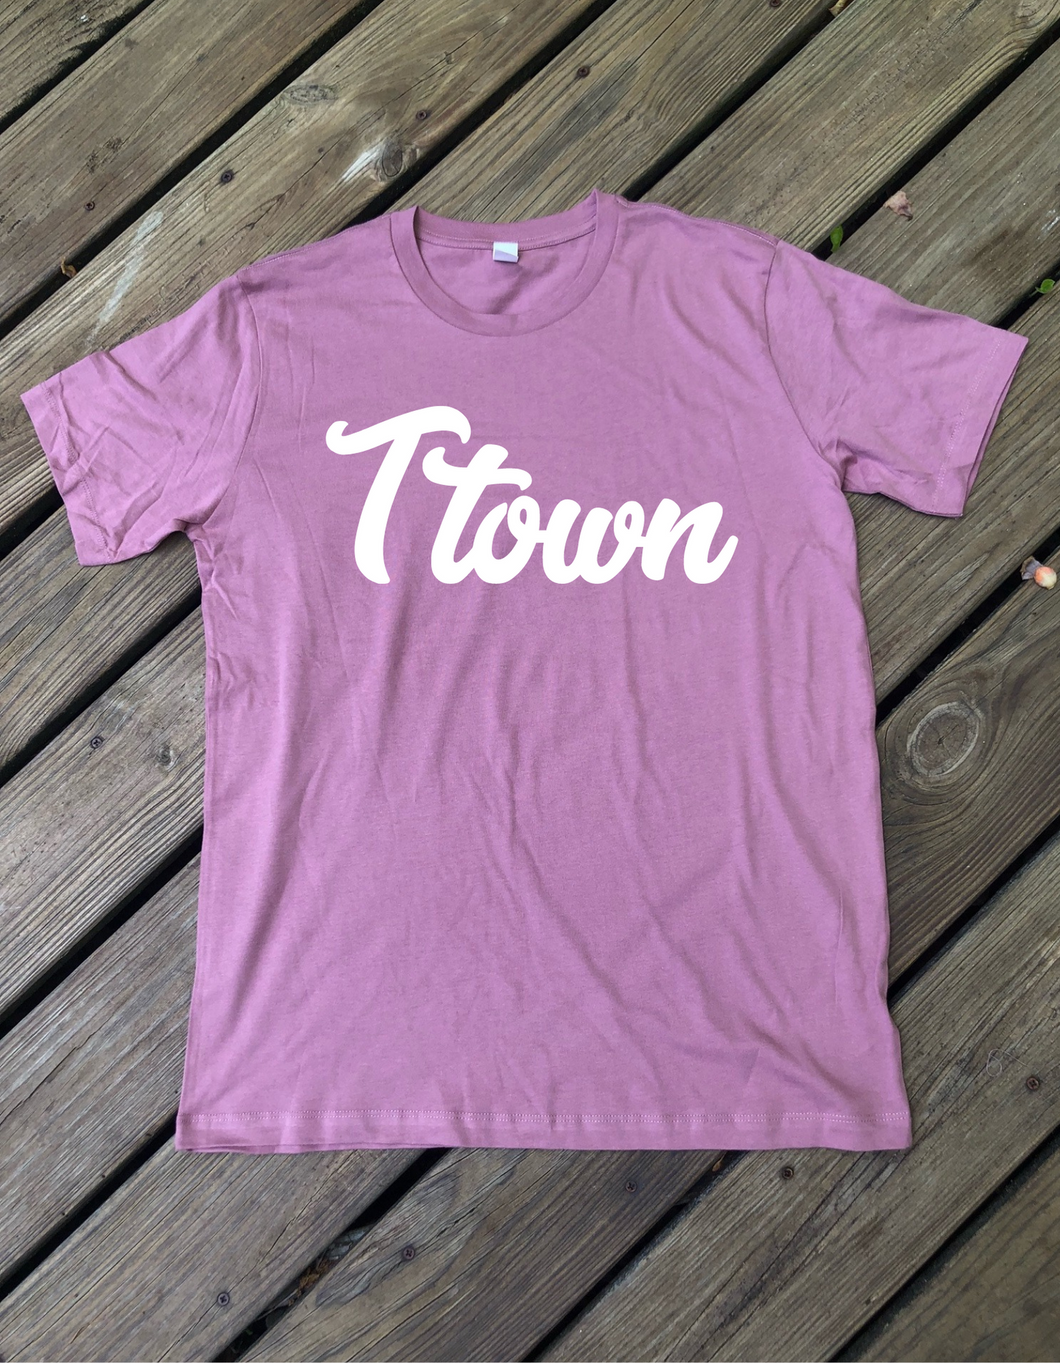 Ttown - Tazewell Hometown Shirt